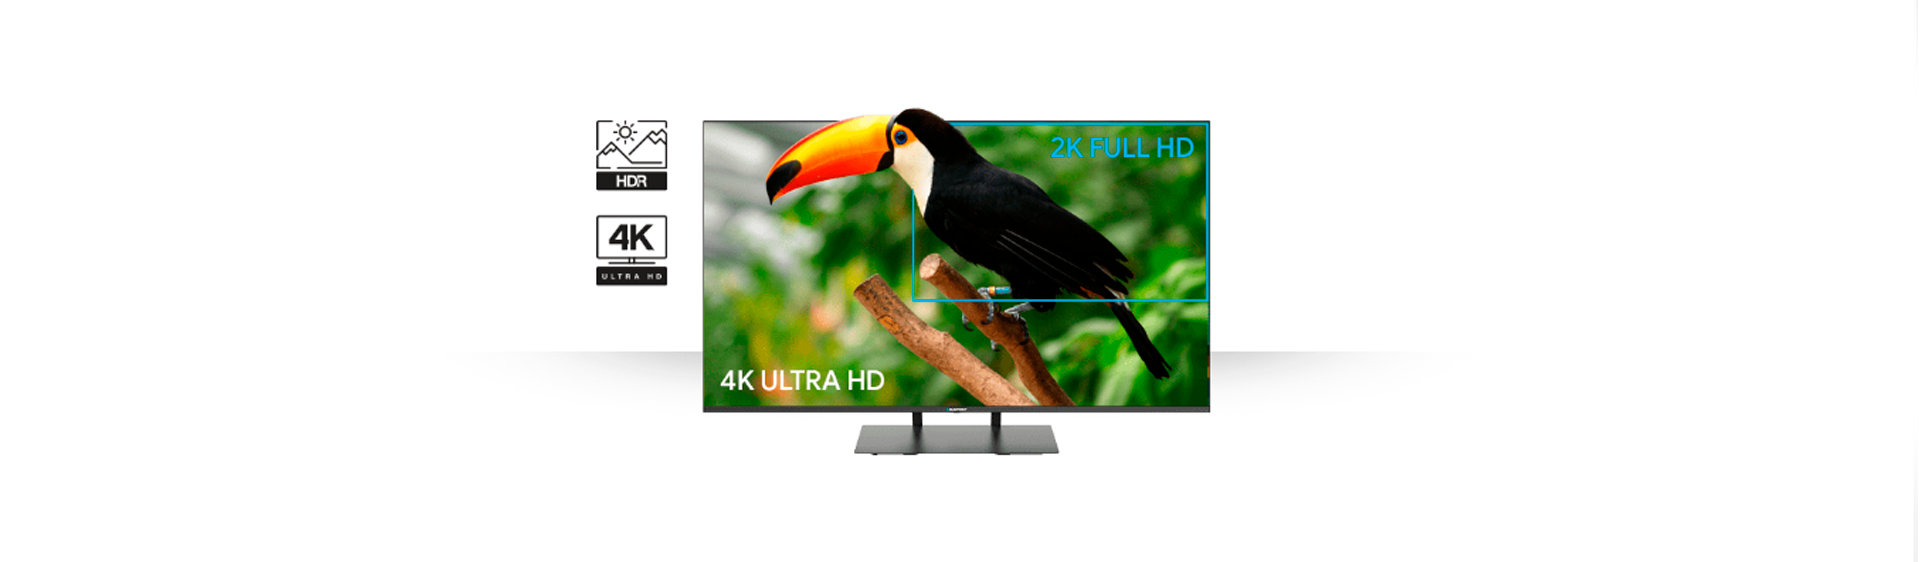 Телевизор UHD 4K Android TV Blaupunkt 50UB7000